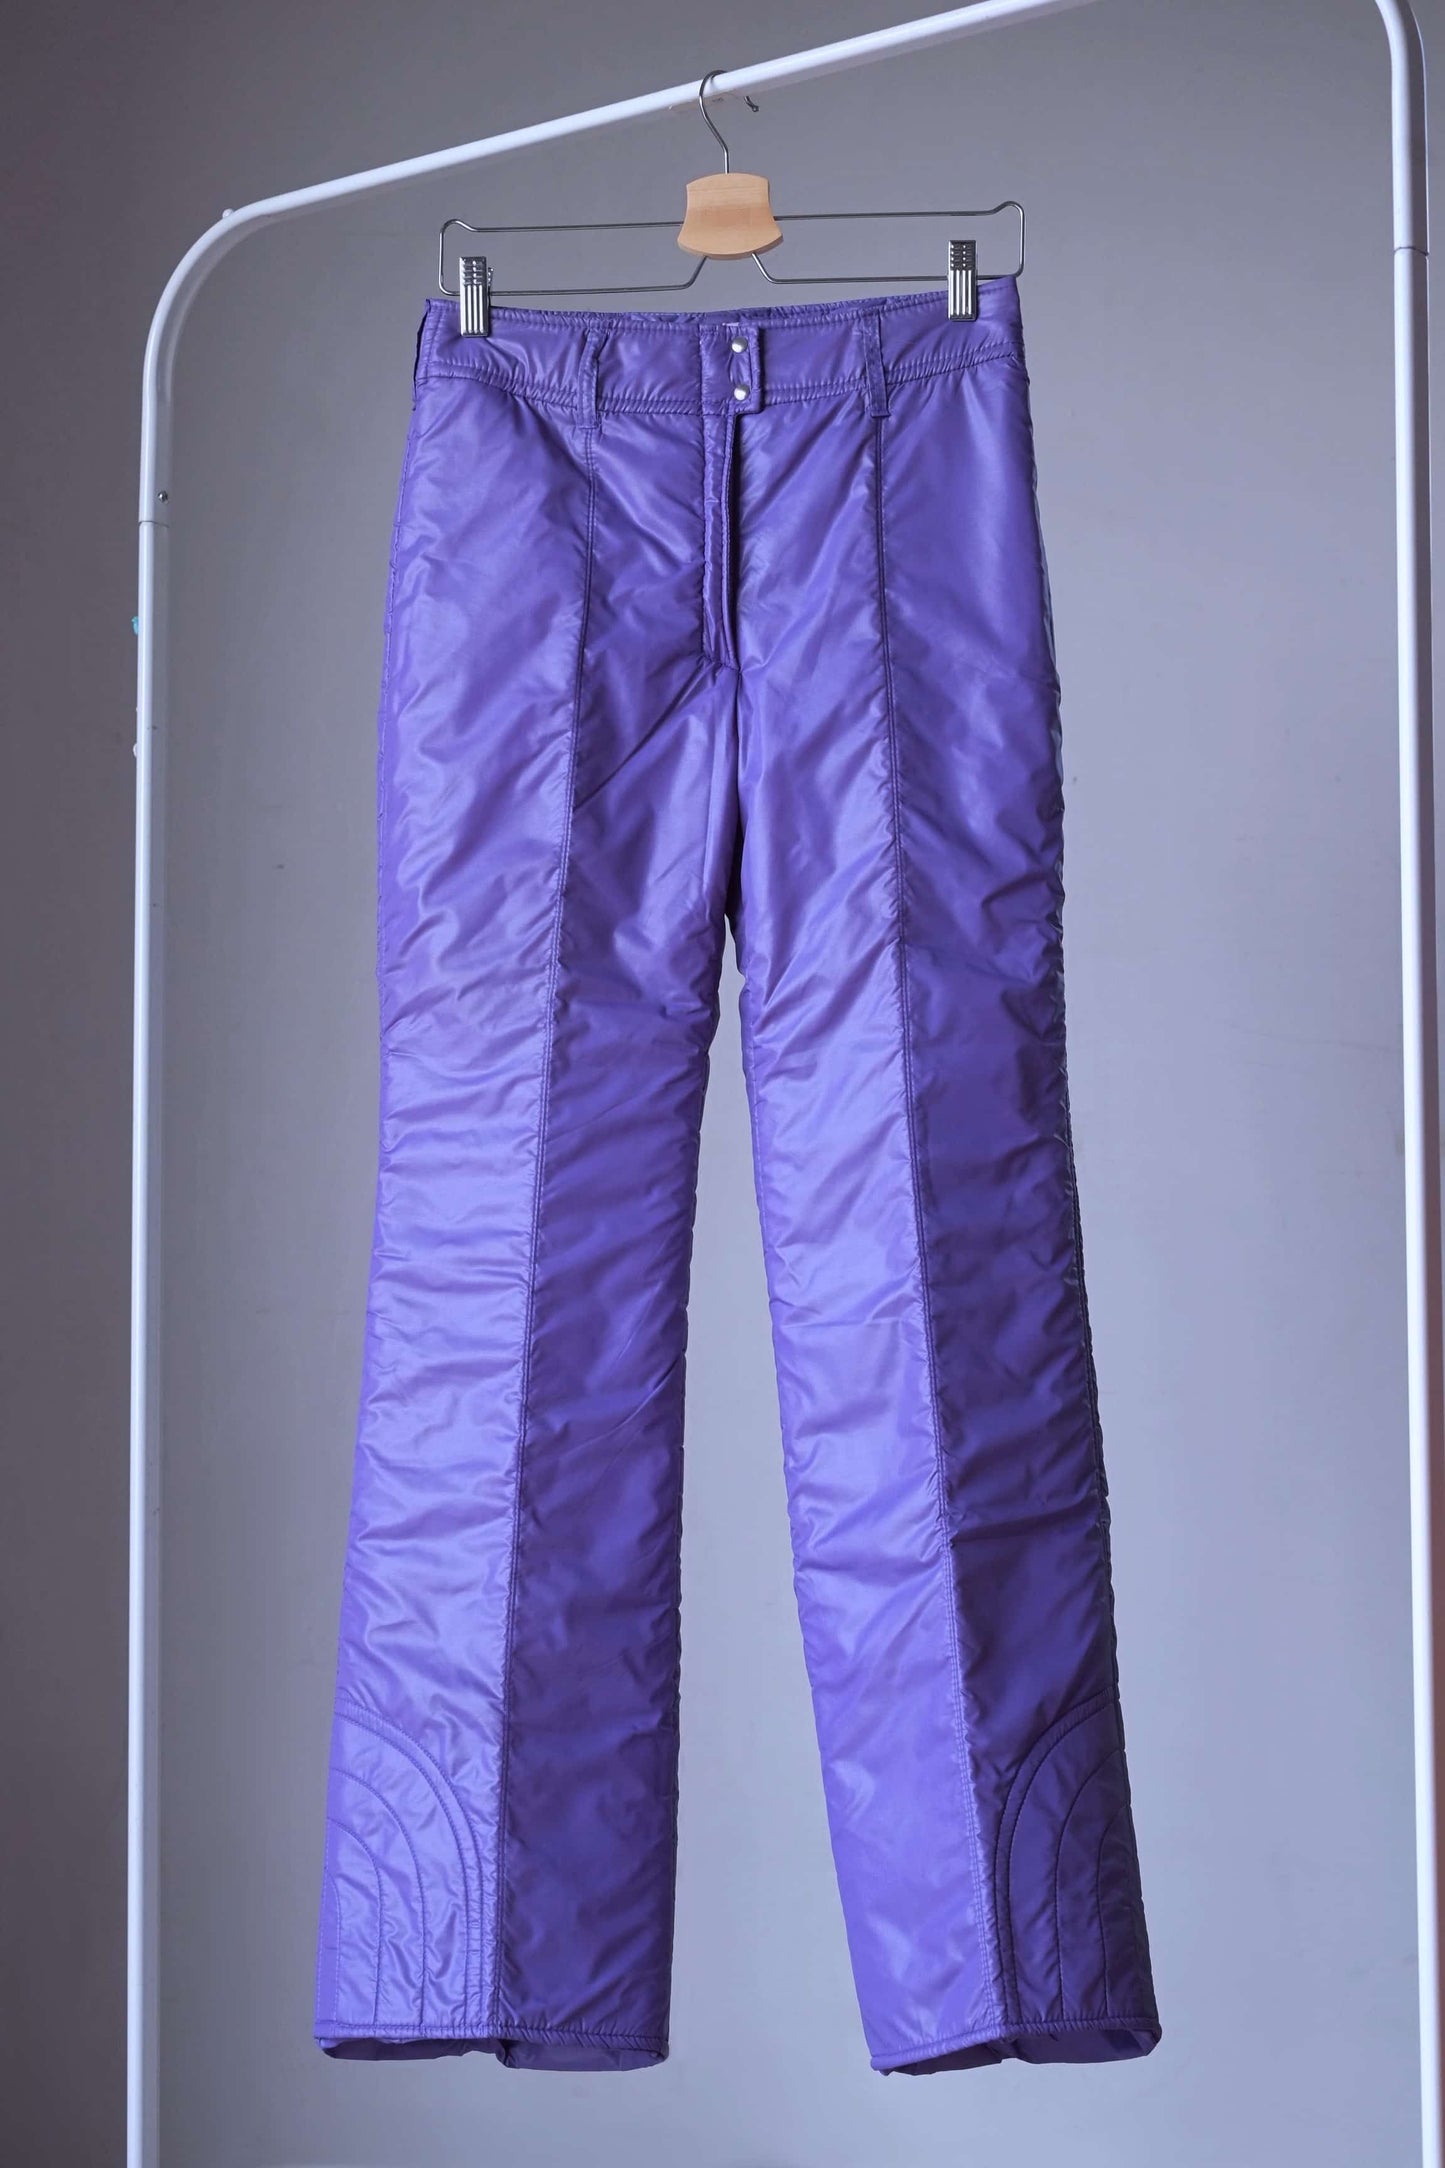 Front view of purple ski pants of mossant vintage 70s women 2-piece ski suit